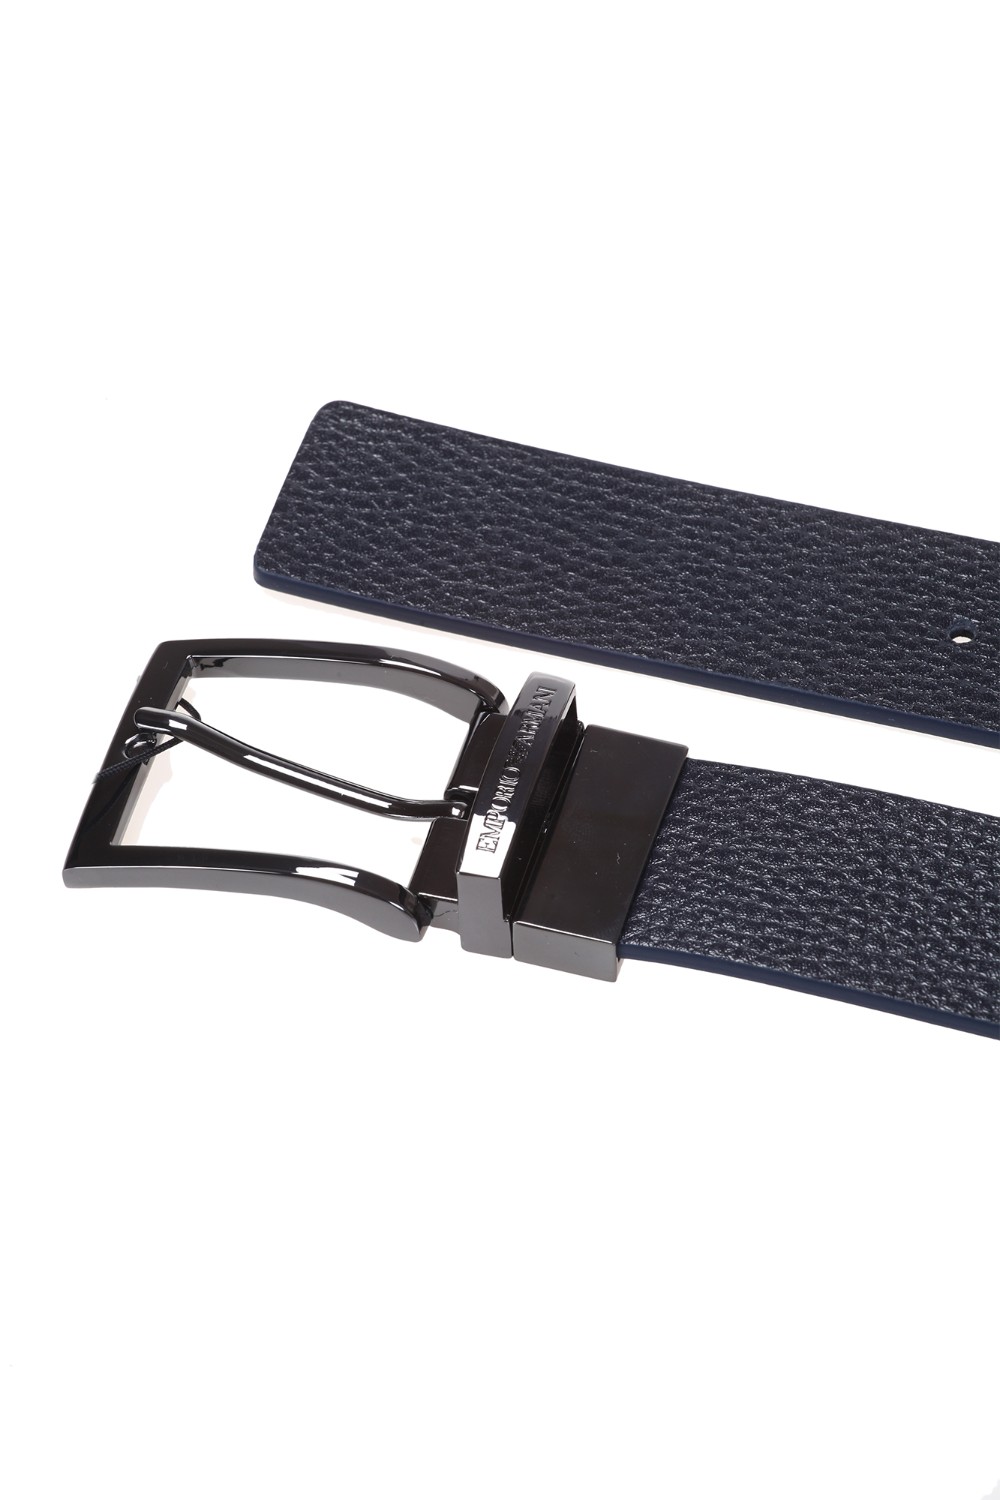 shop EMPORIO ARMANI  Cintura: Emporio Armani cintura reversibile in pelle martellata.
Fibbia con logo.
Composizione: 100% vera pelle.
Fabbricato in Italia.. Y4S195 YLO8J-88256 number 8160156